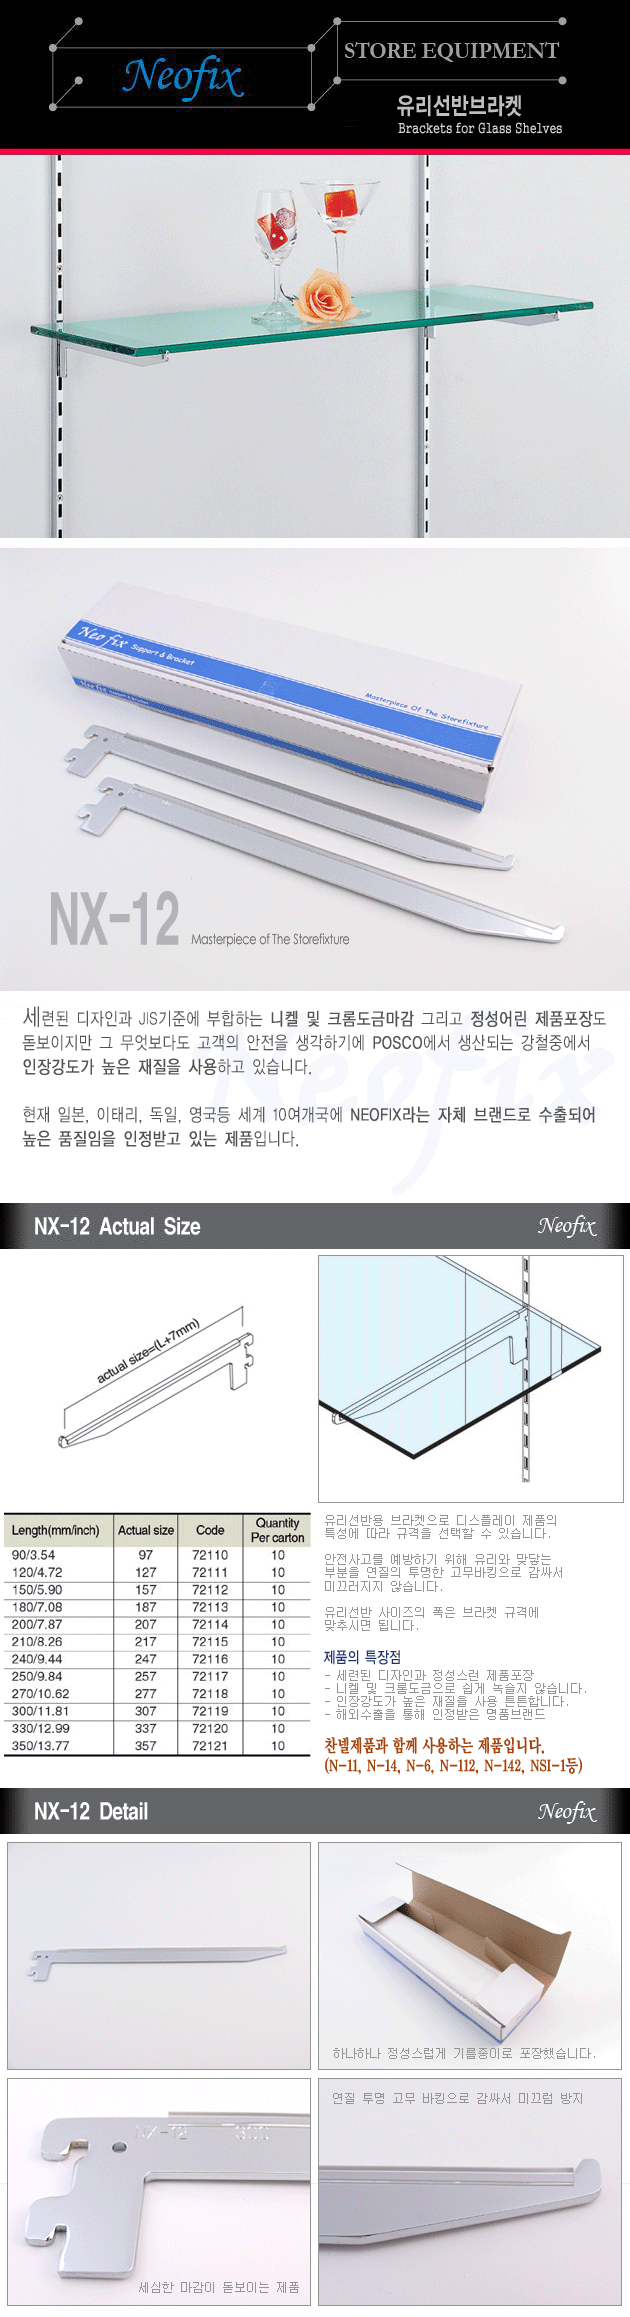 NX-12